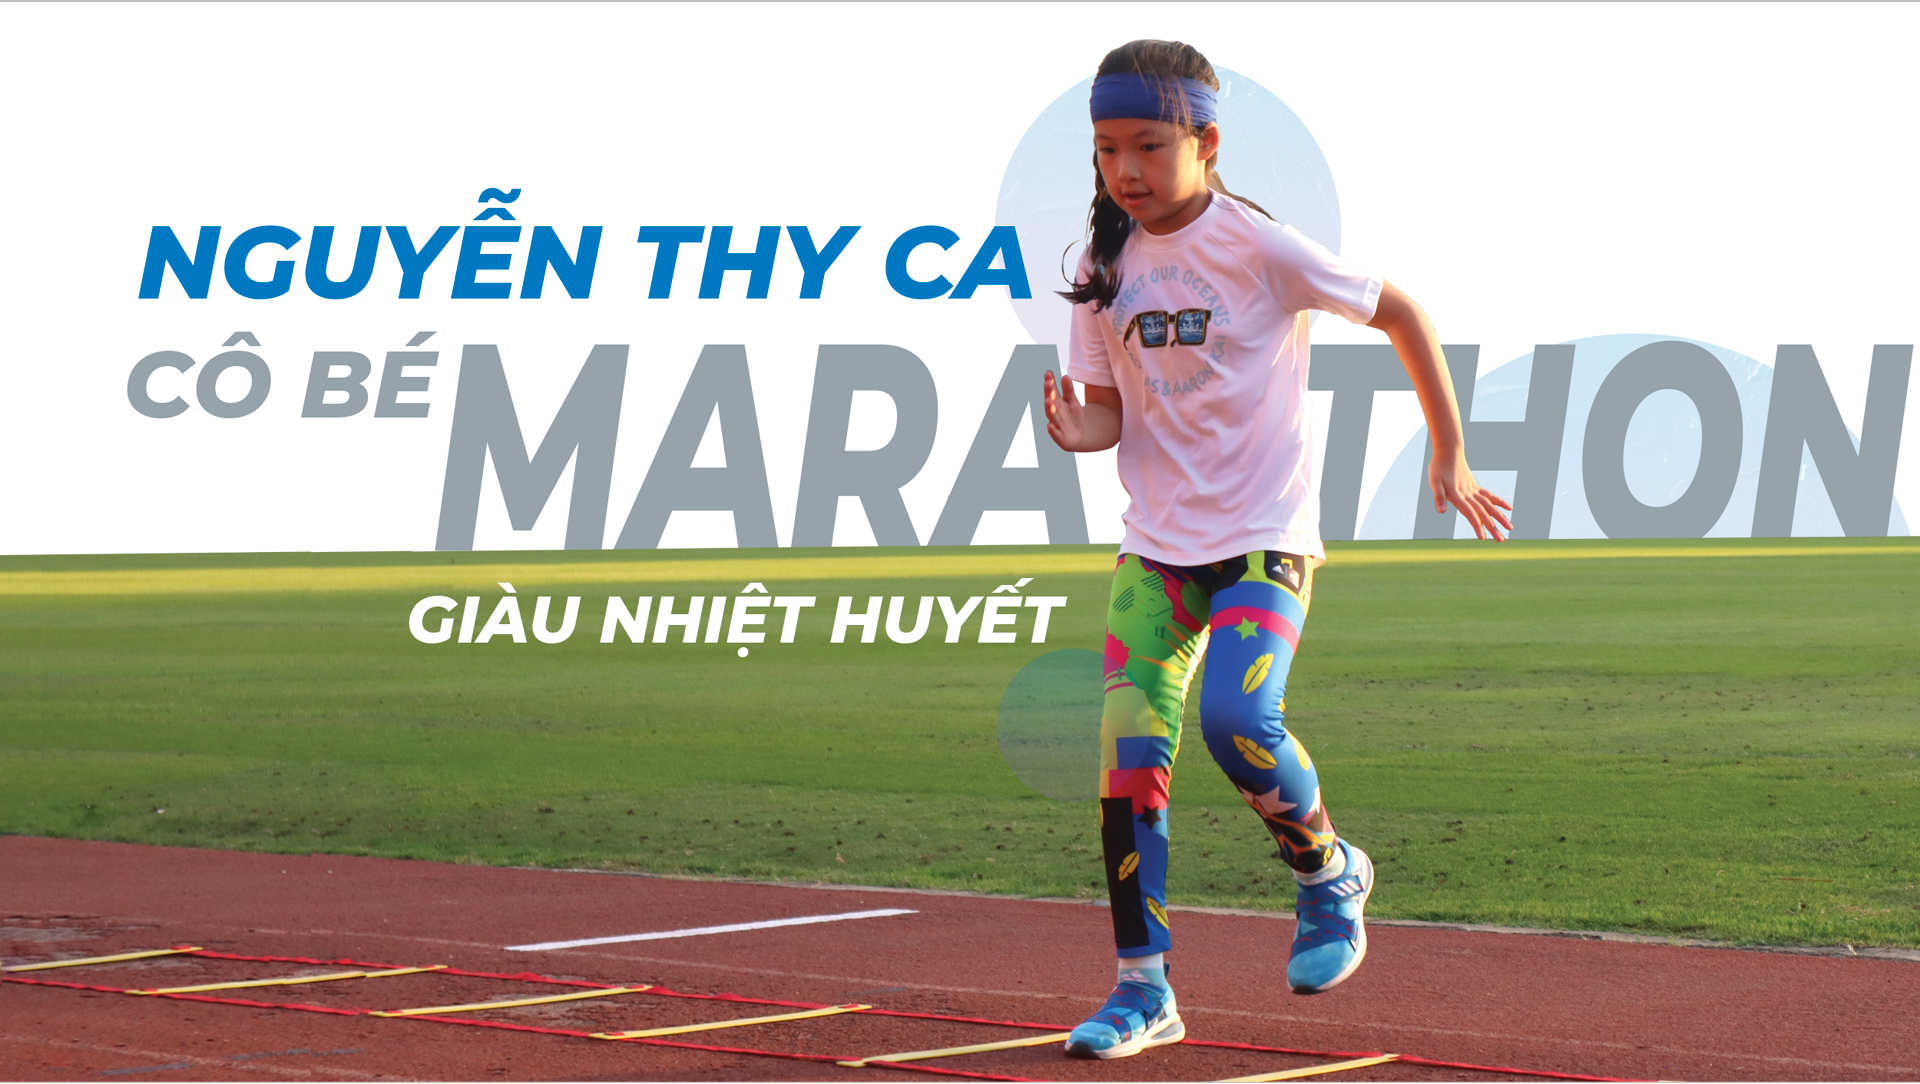 Nguyễn Thy Ca - "Cô bé marathon" giàu nhiệt huyết